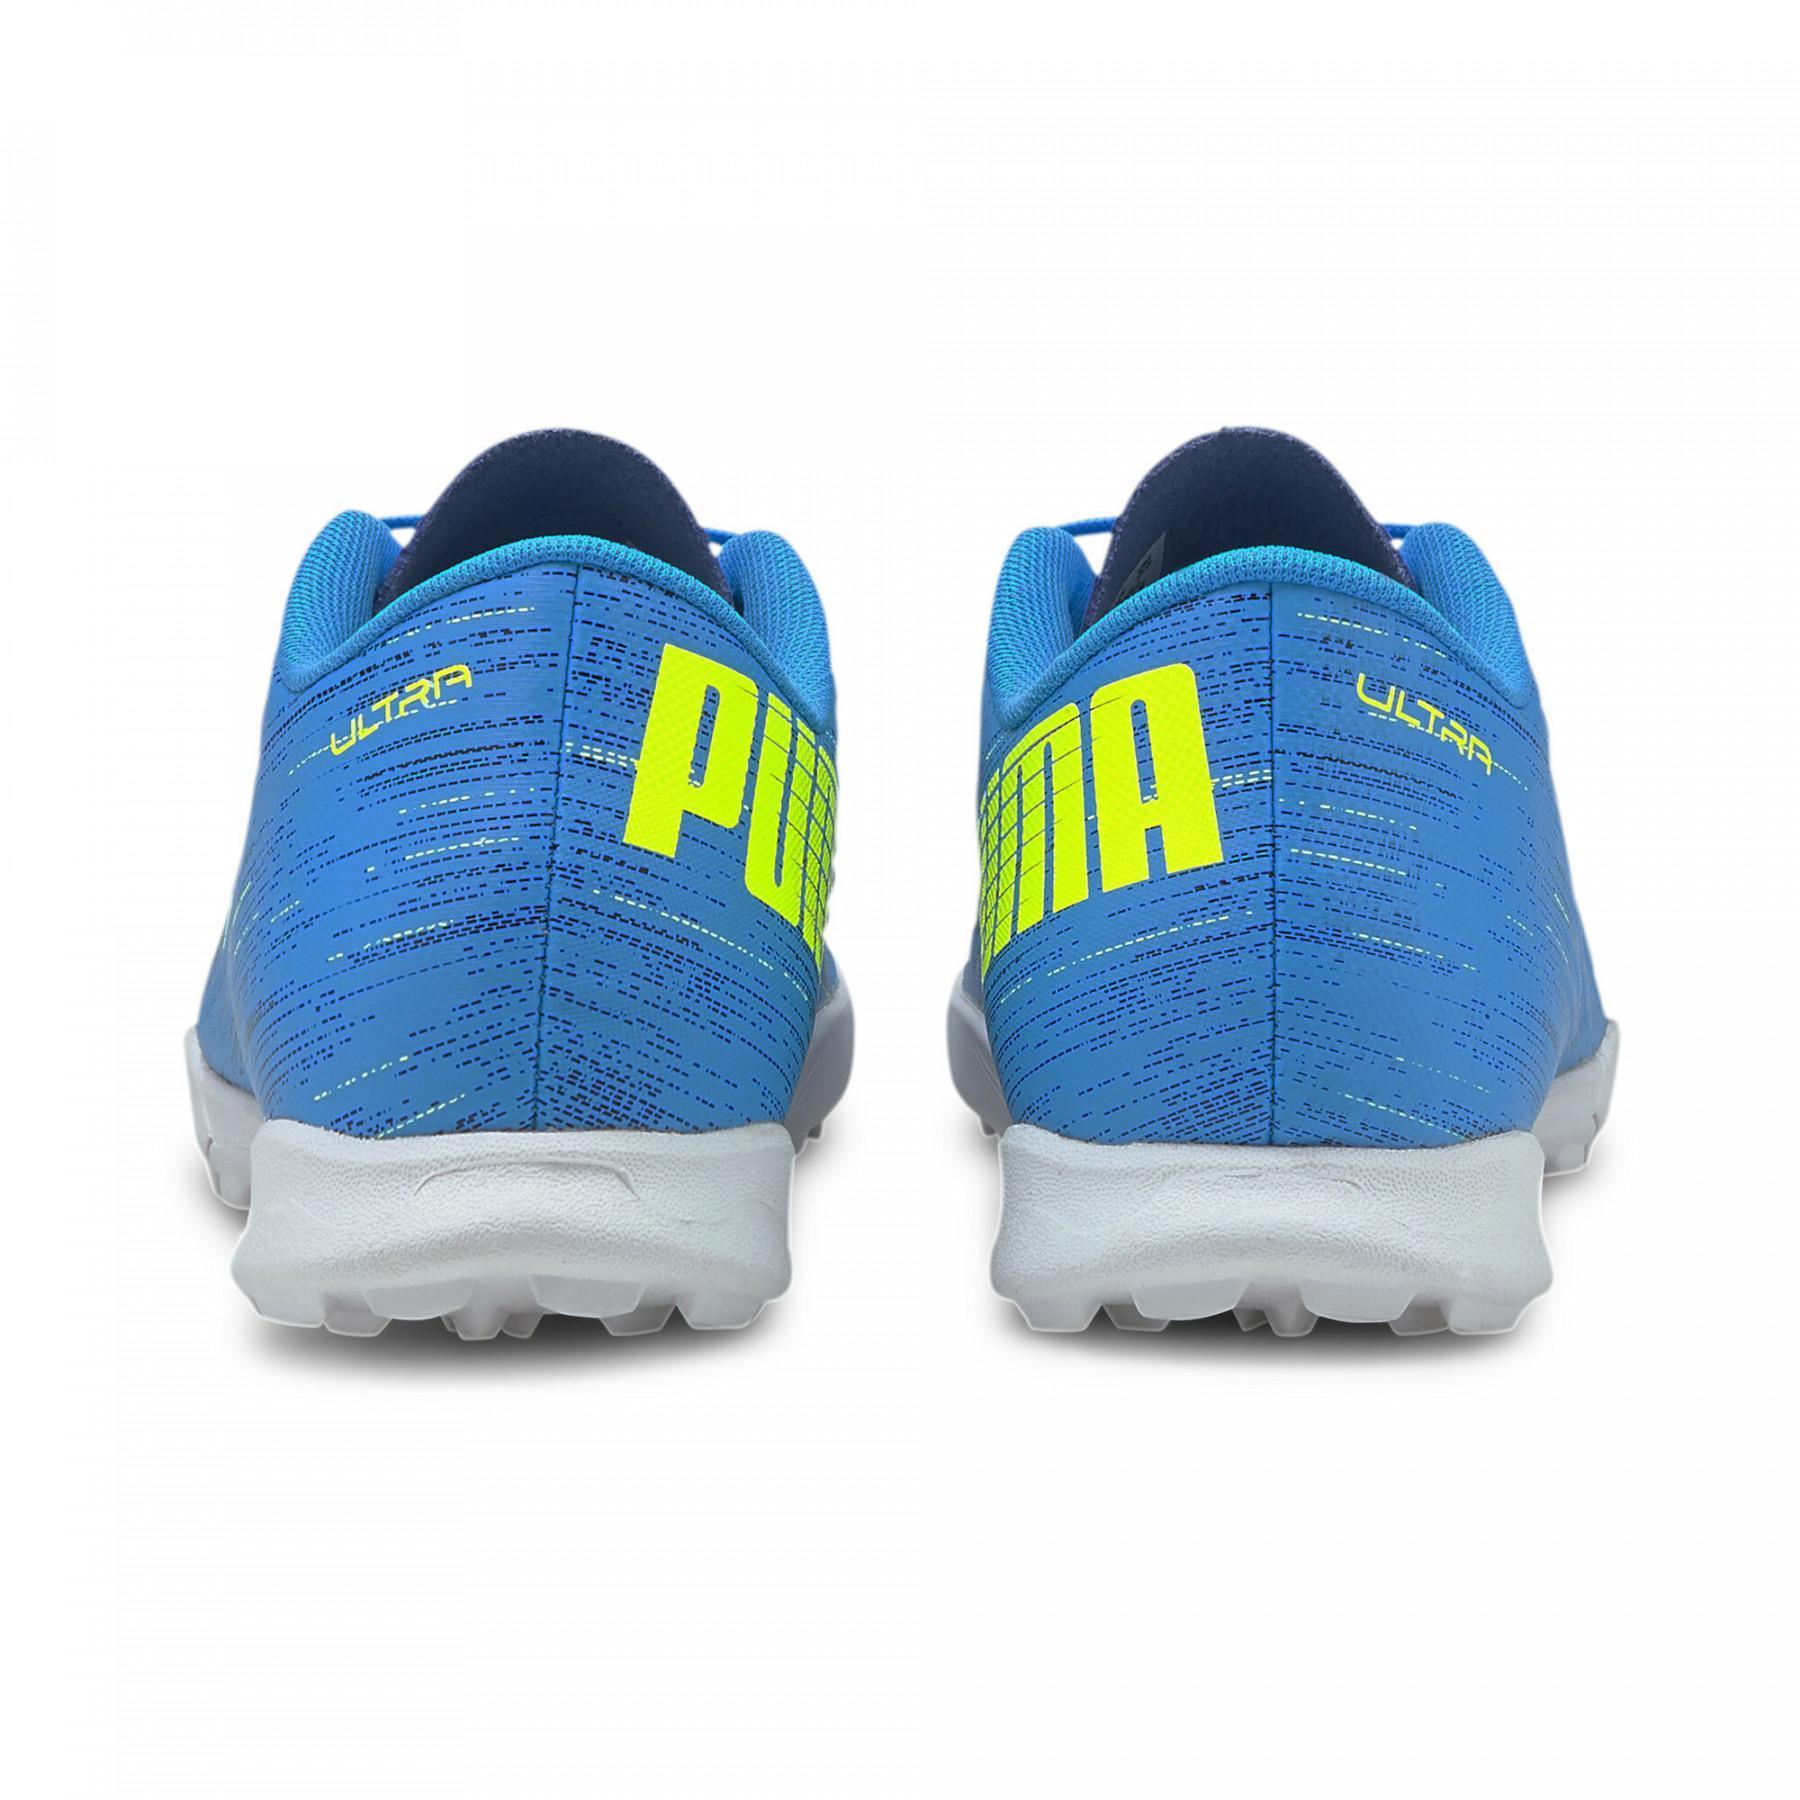 Kinderschoenen Puma Ultra 4.2 TT